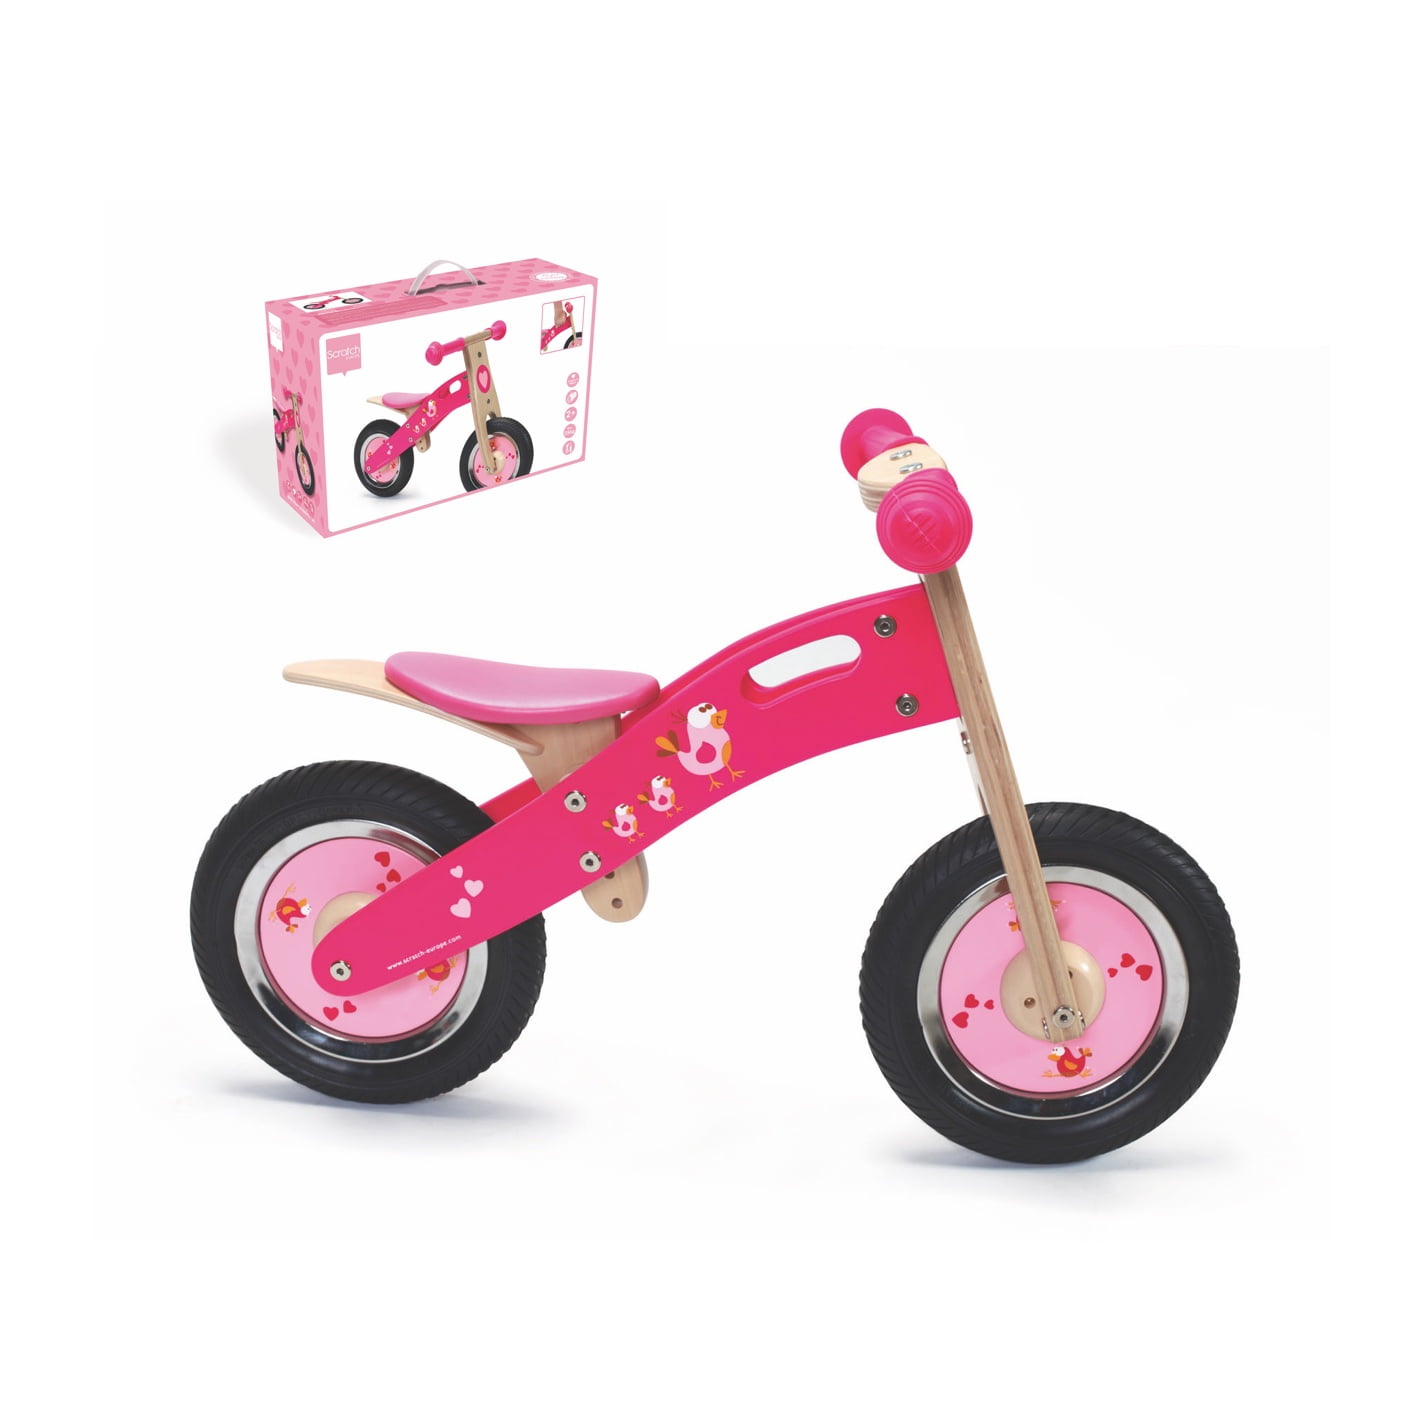 Scratch Balance bike - Pink